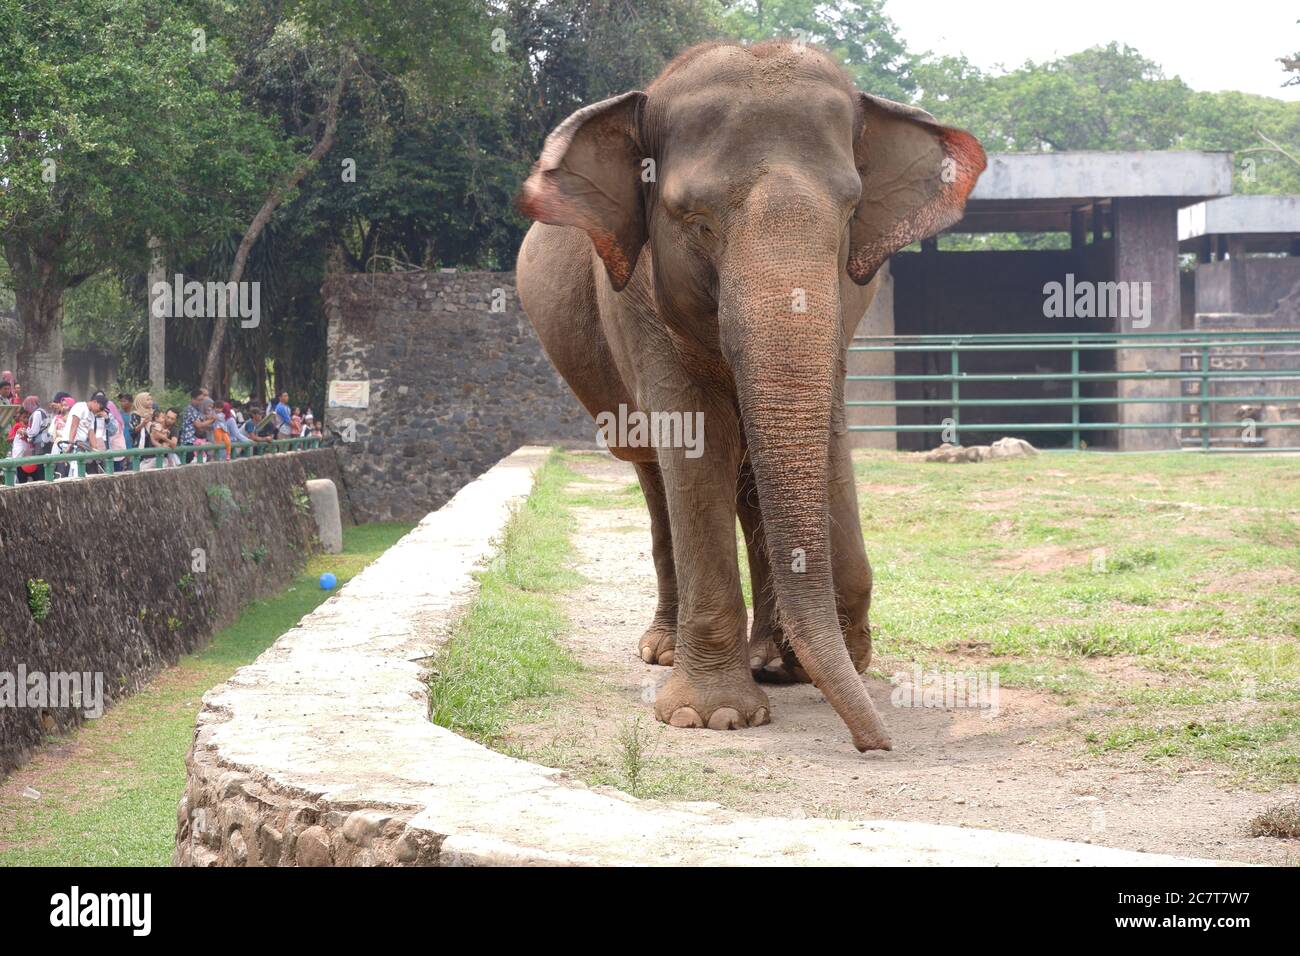 L'elefante Sumatran è una delle tre sottospecie riconosciute dell'elefante asiatico, e originaria dell'isola indonesiana di Sumatra: Giacarta, Indonesia Foto Stock